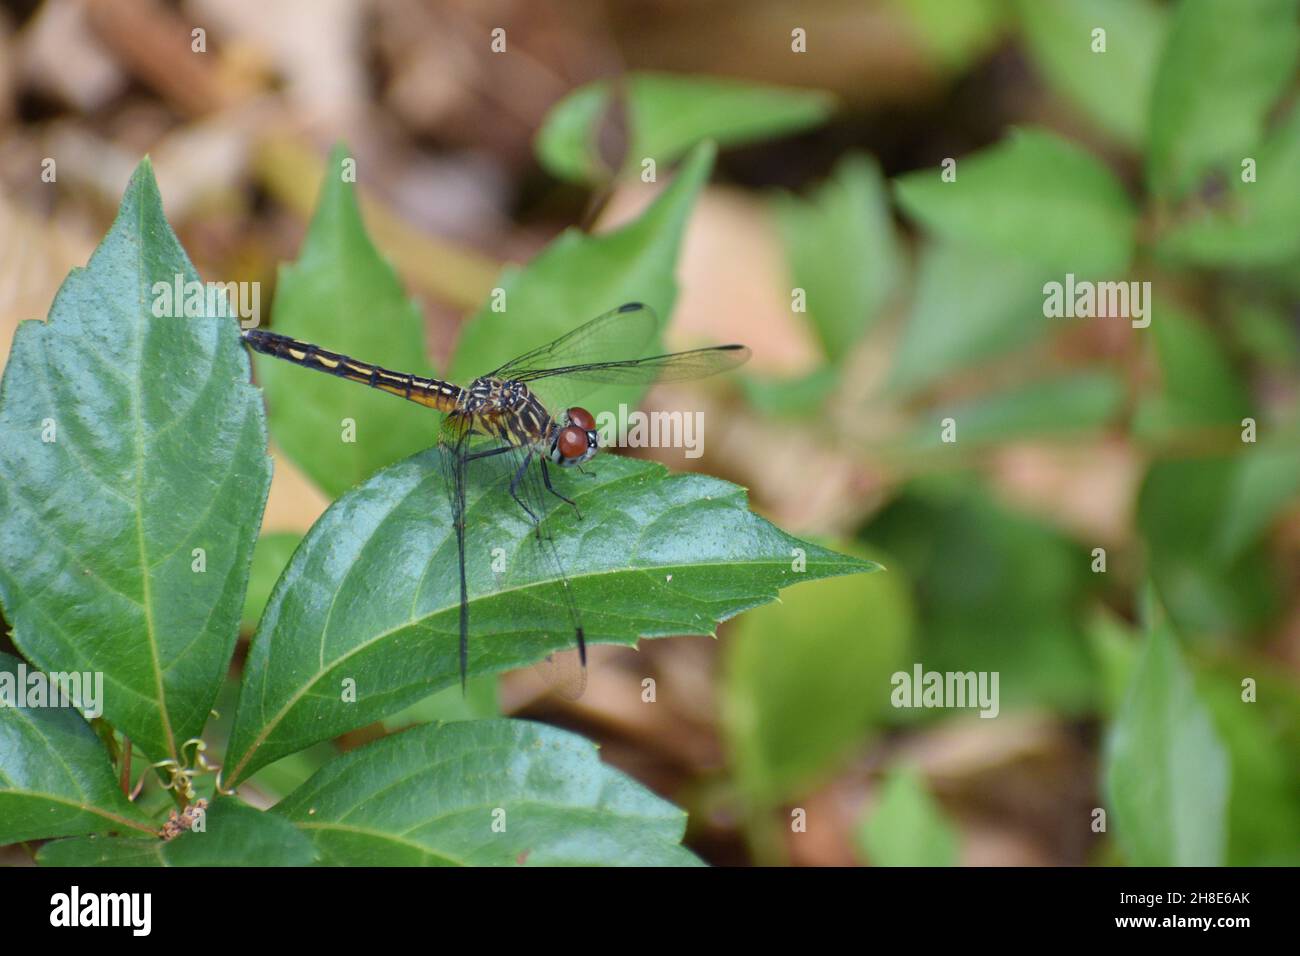 Primo piano di una grande libellula con ali trasparenti e occhi composti. Foto Stock